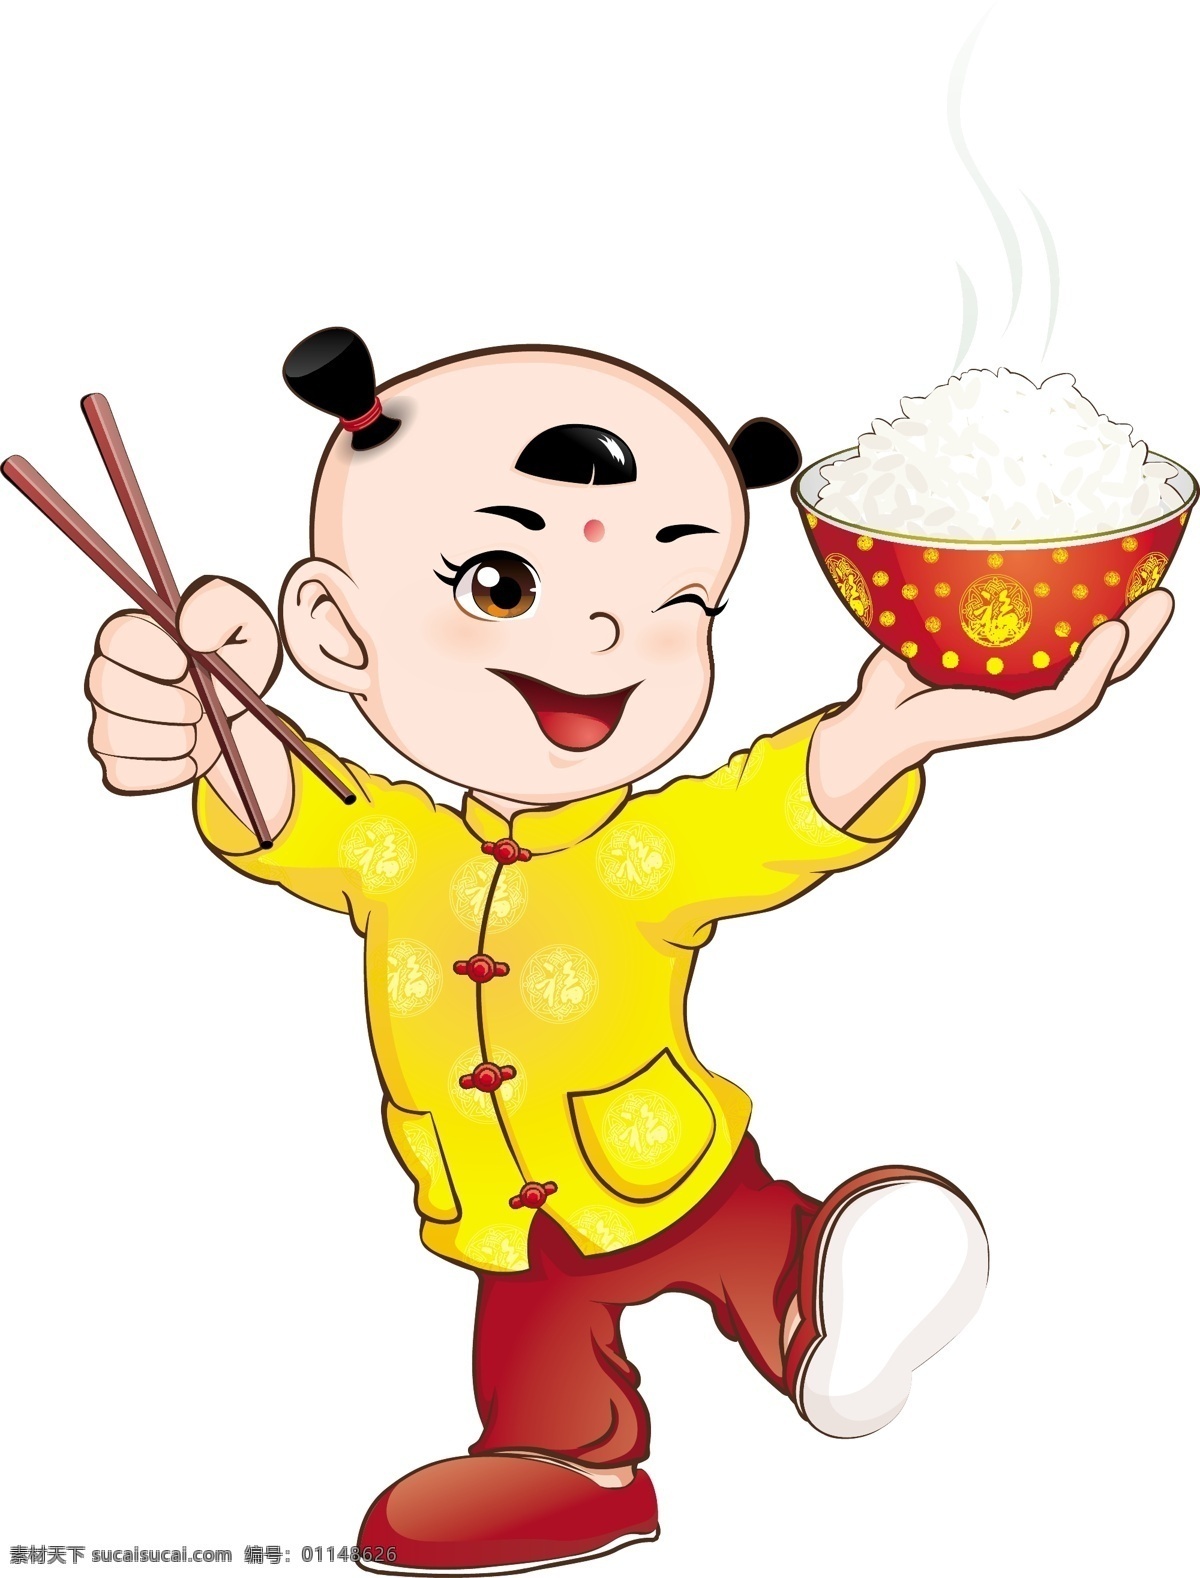 卡通小孩 卡通 卡通人 卡通人物 小孩 小孩子 米饭 矢量 儿童幼儿 矢量人物